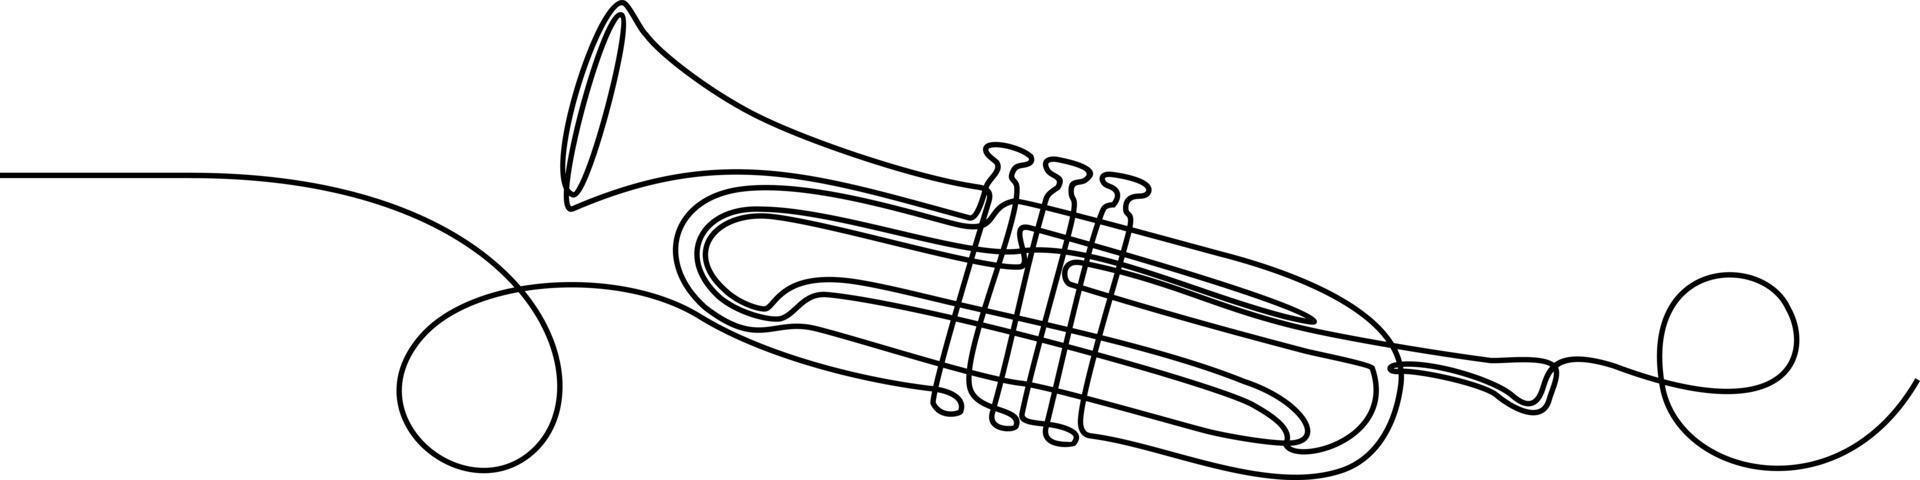 kontinuerlig en rad ritning av trumpet musikinstrument vektor